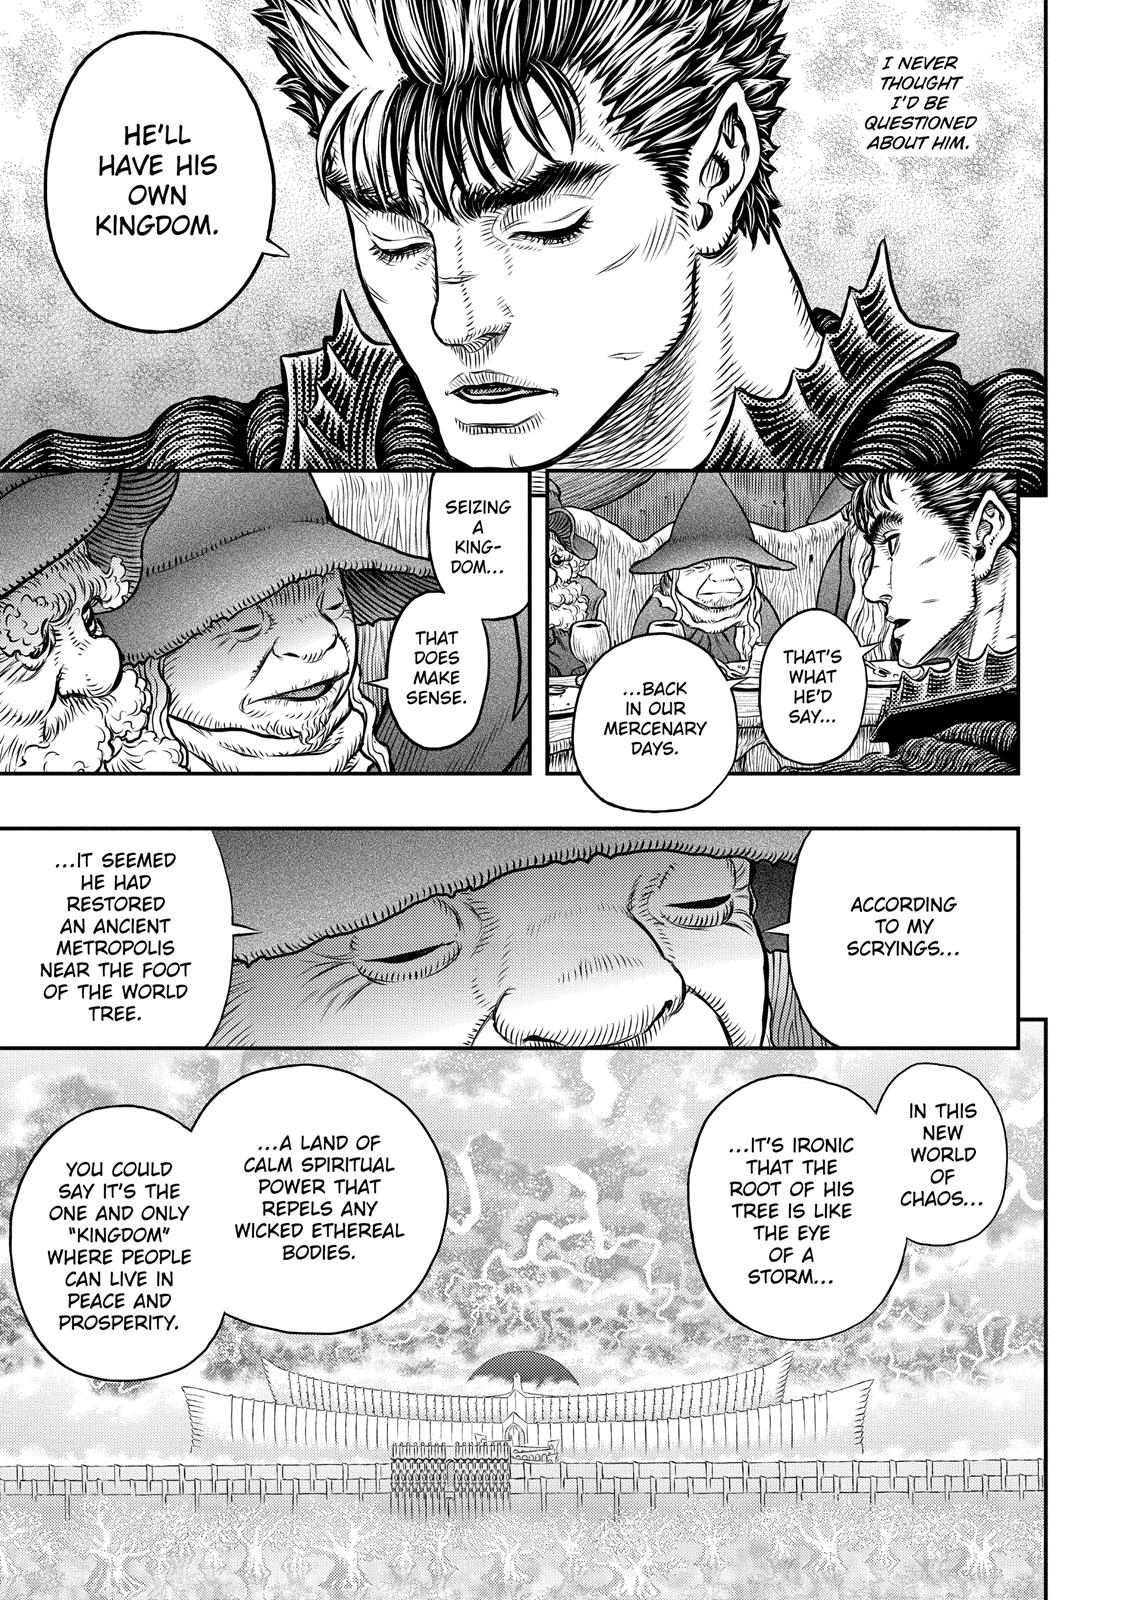 Berserk Manga Chapter 345 image 16